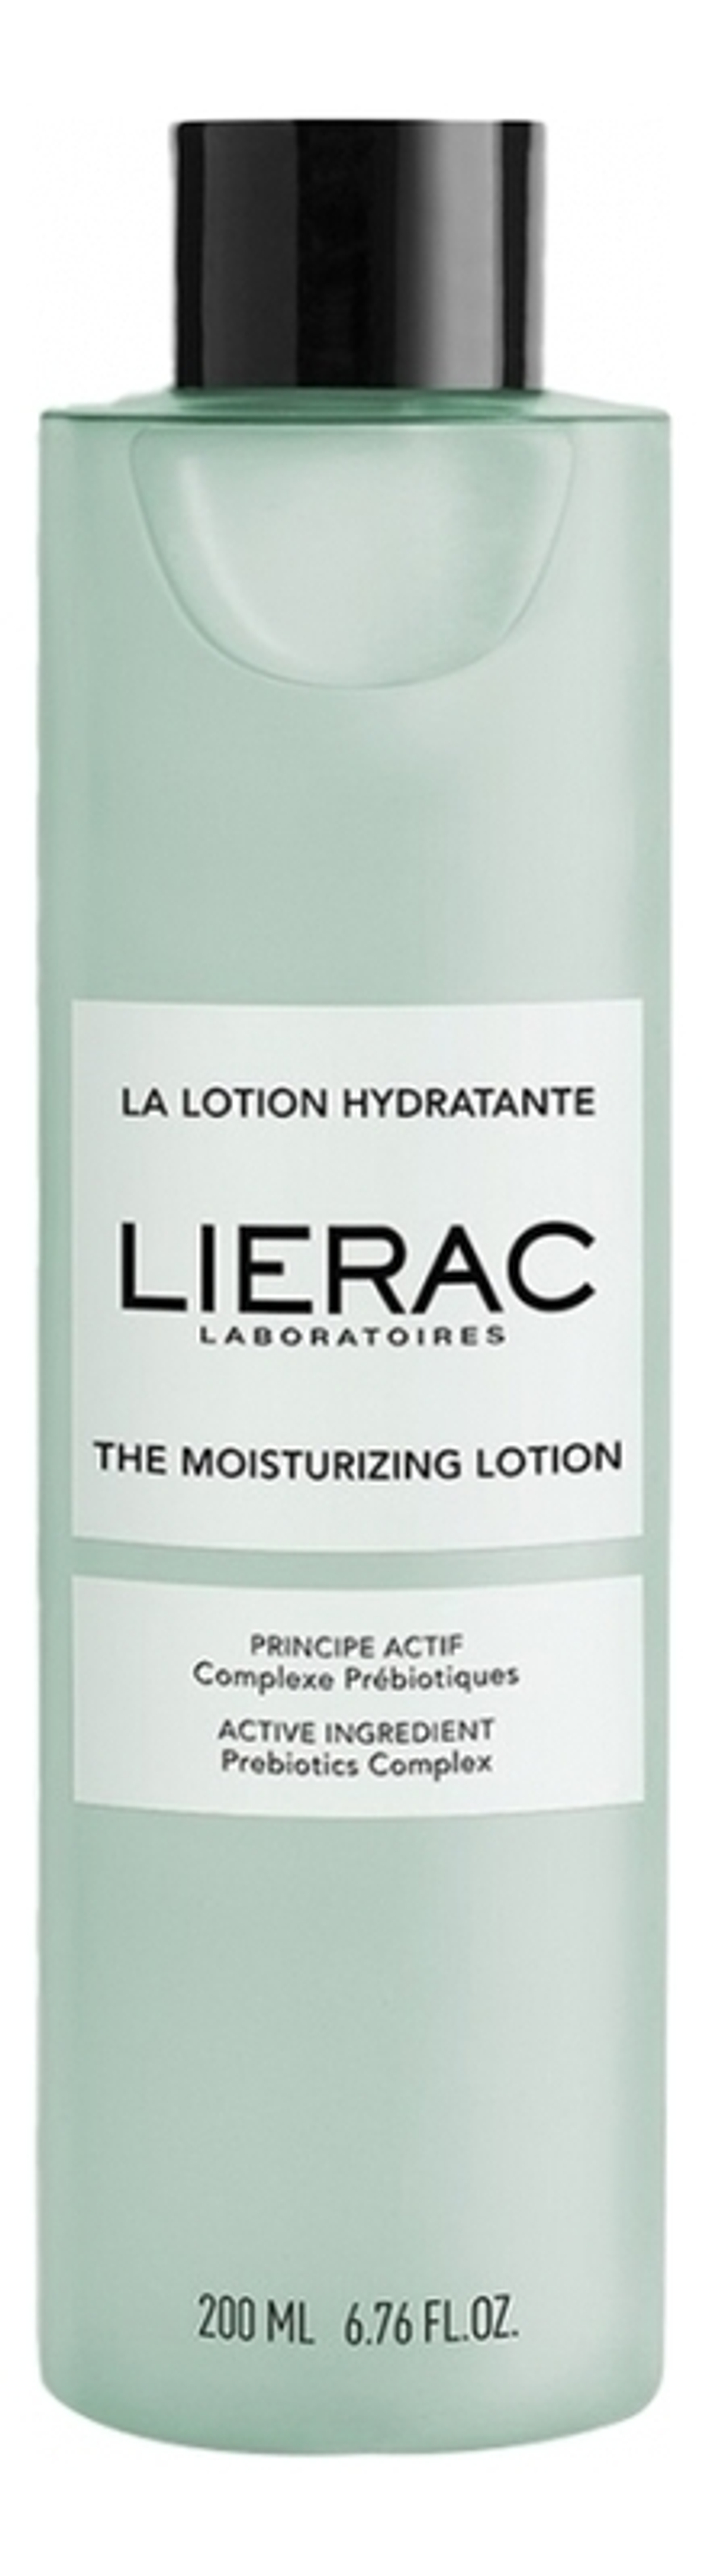 LIERAC Увлажняющий лосьон для лица La Lotion Hydratante 200 мл